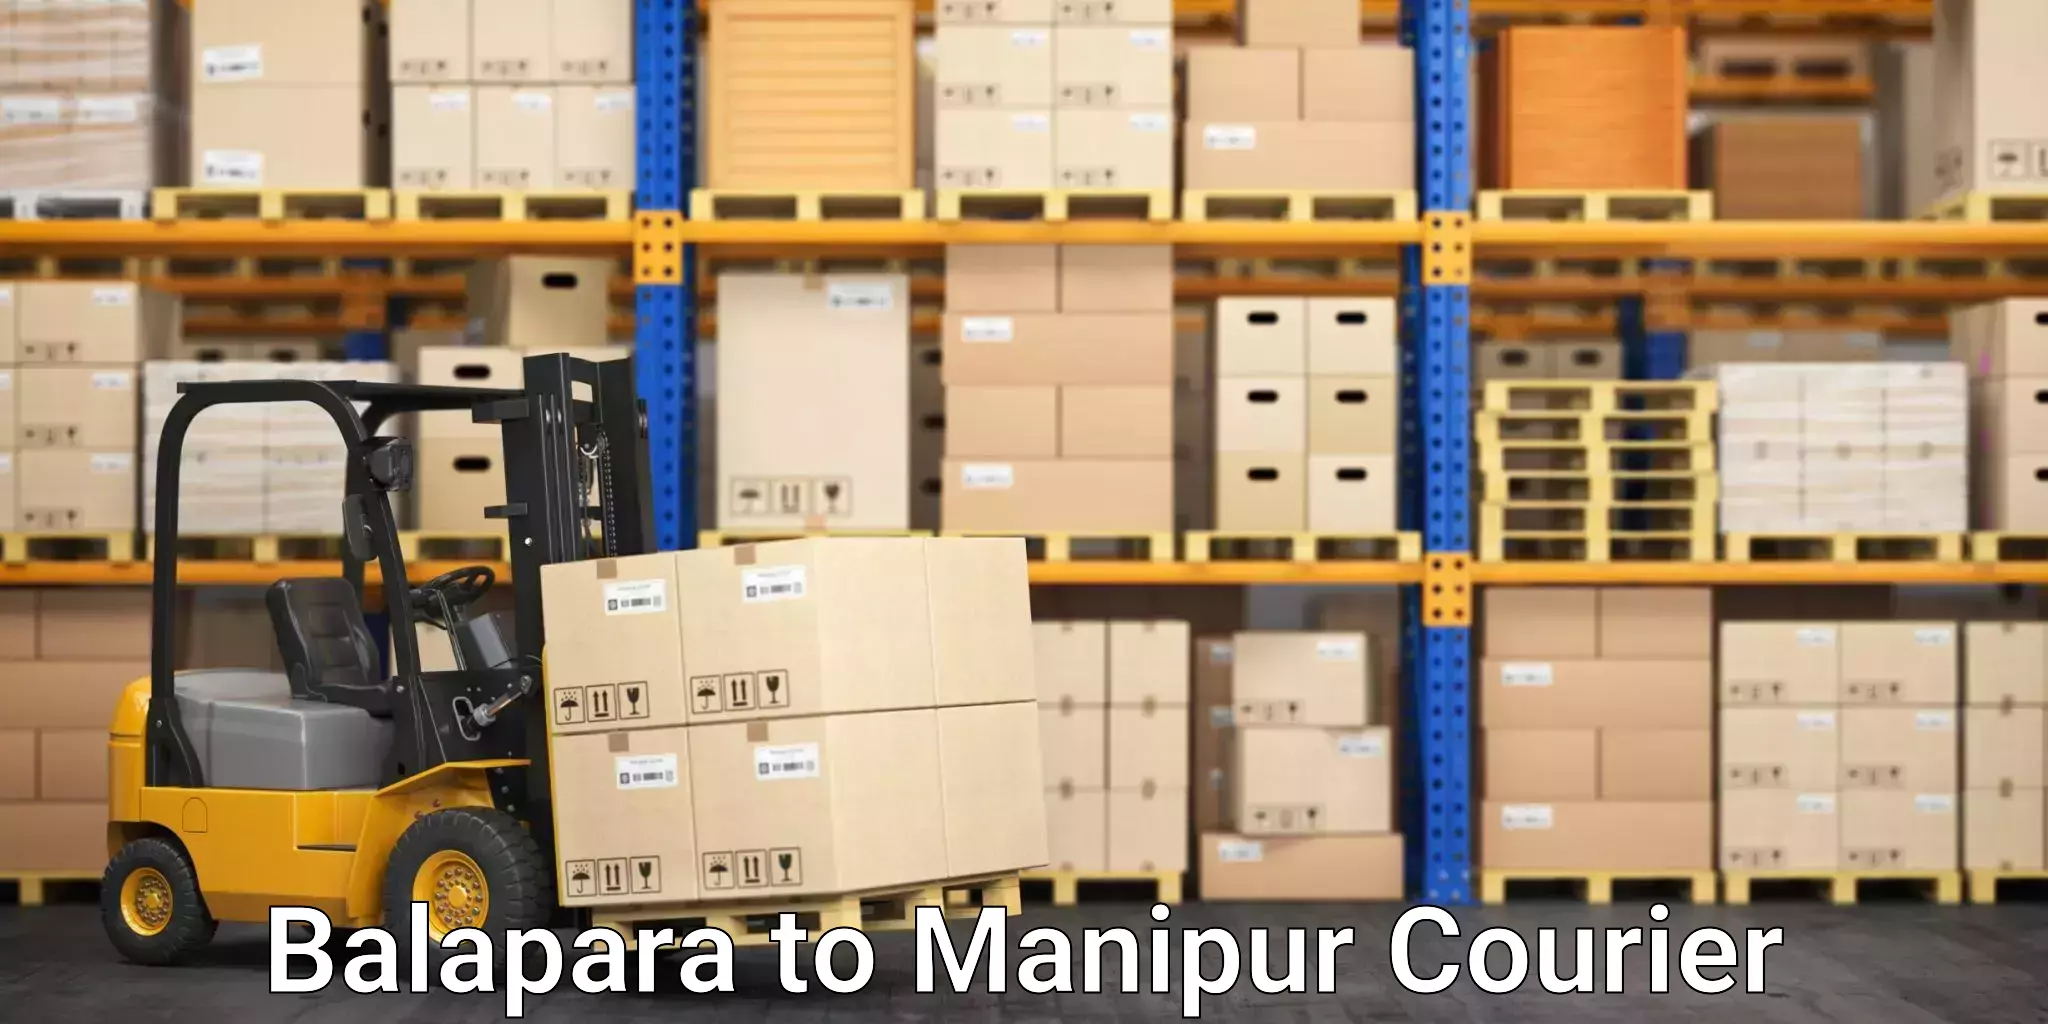 Tech-enabled shipping Balapara to Imphal